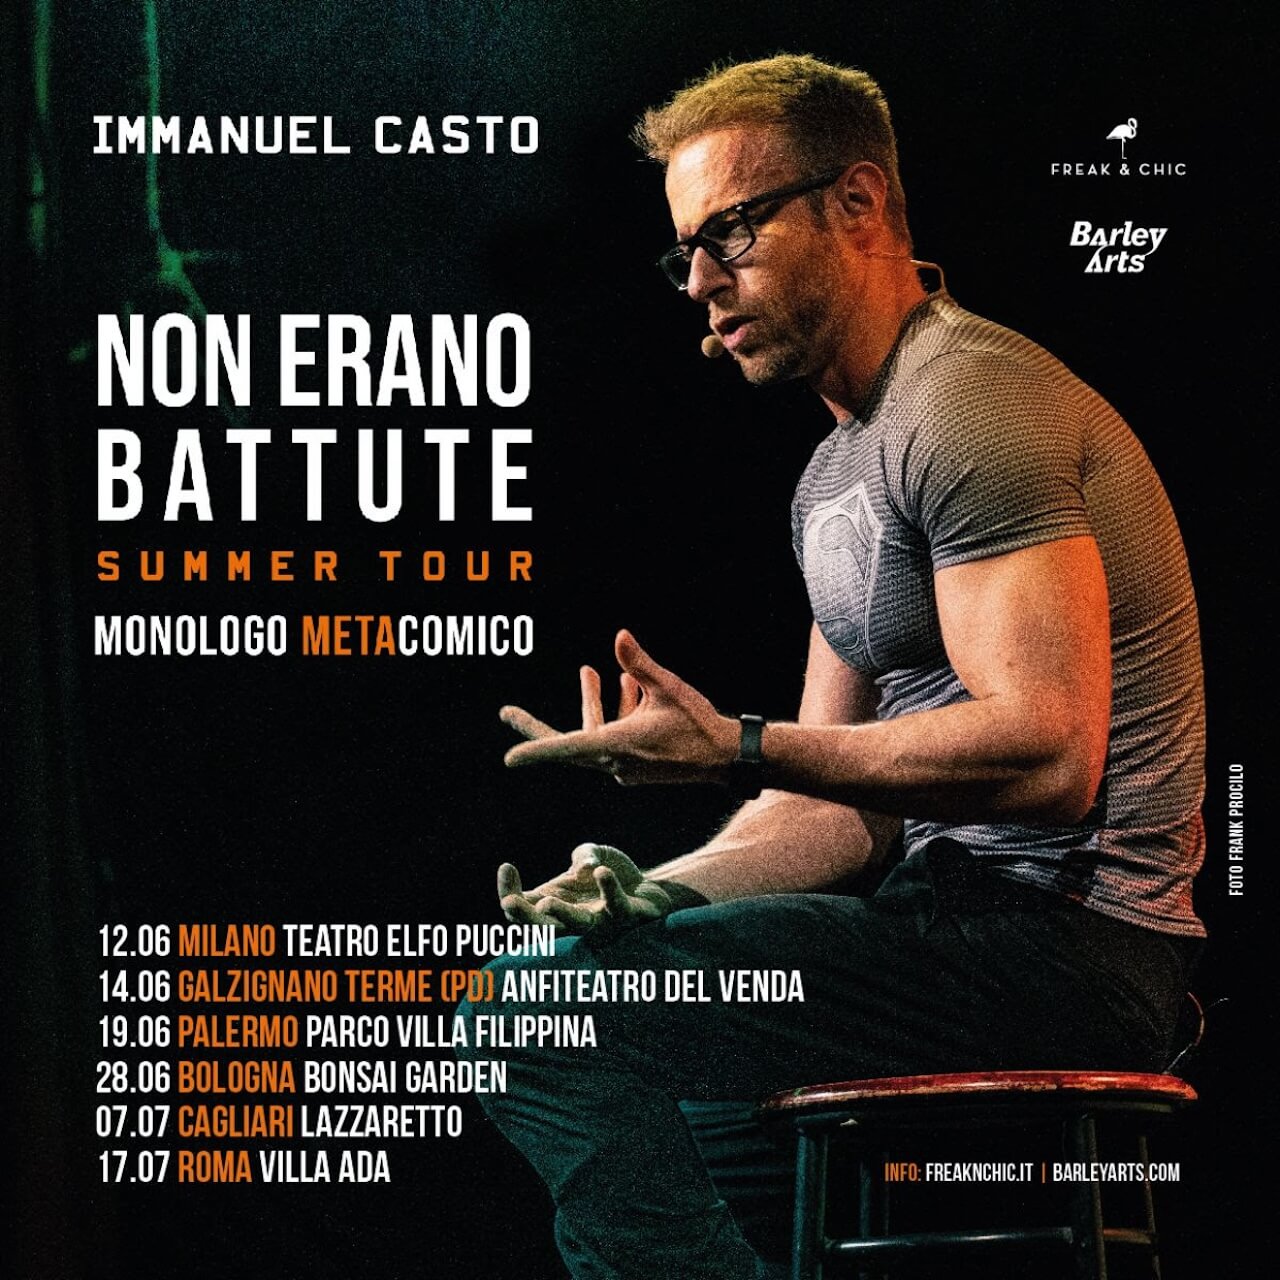 Immanuel Casto, dopo 30 sold out arriva il tour estivo XXL del monologo meta-comico "Non erano Battute" - IMMANUEL CASTO - Gay.it